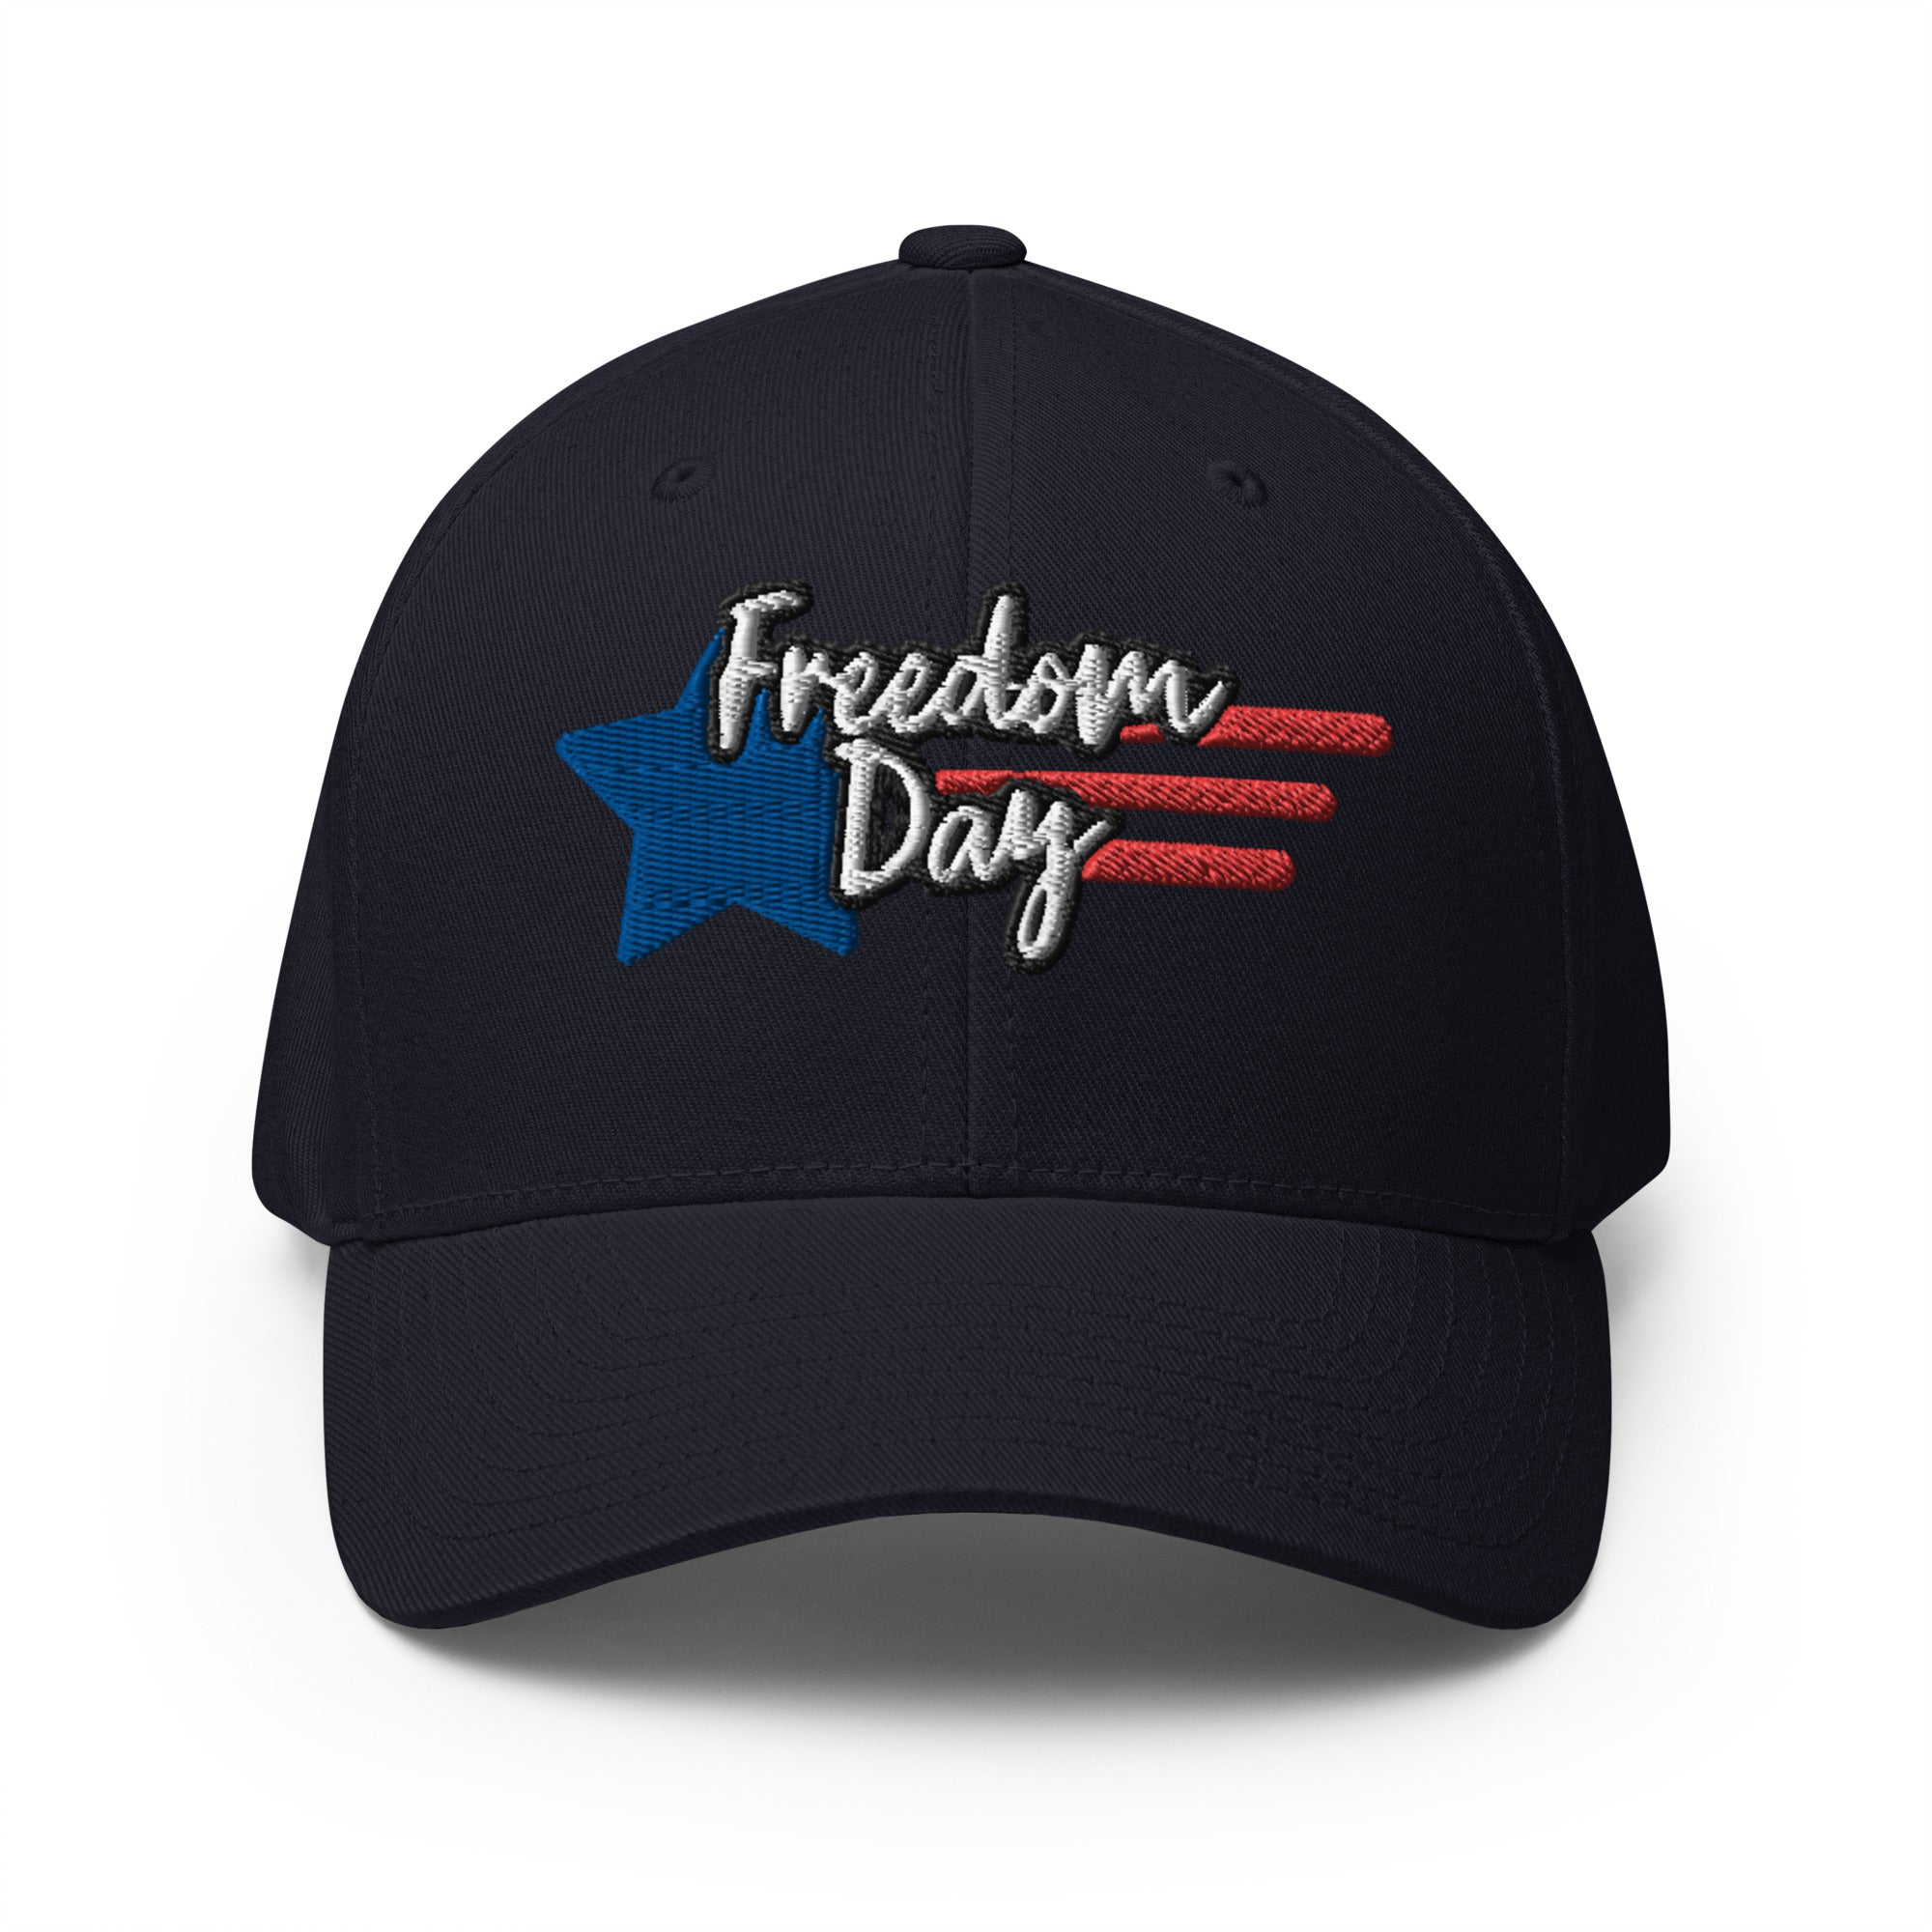 Freedom Day Structured Twill Cap (Premium comfort)